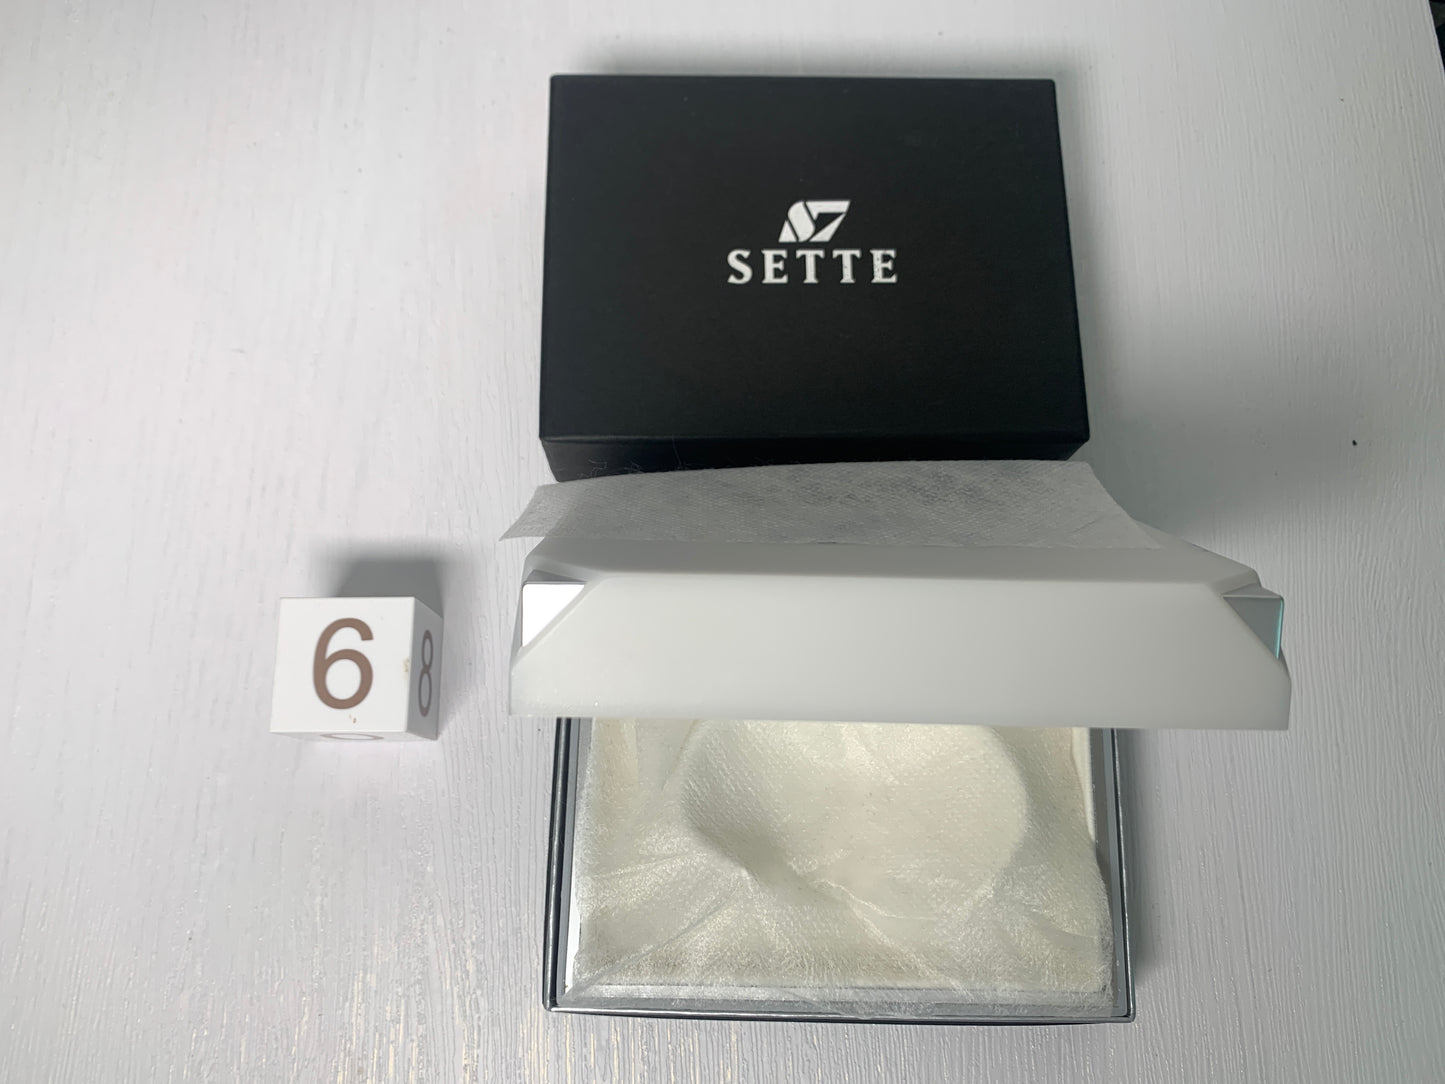 禮品盒 Bvlgari Sette Celine BV mikimoto gemcerey for wallet scarf belt bag - 9NOV